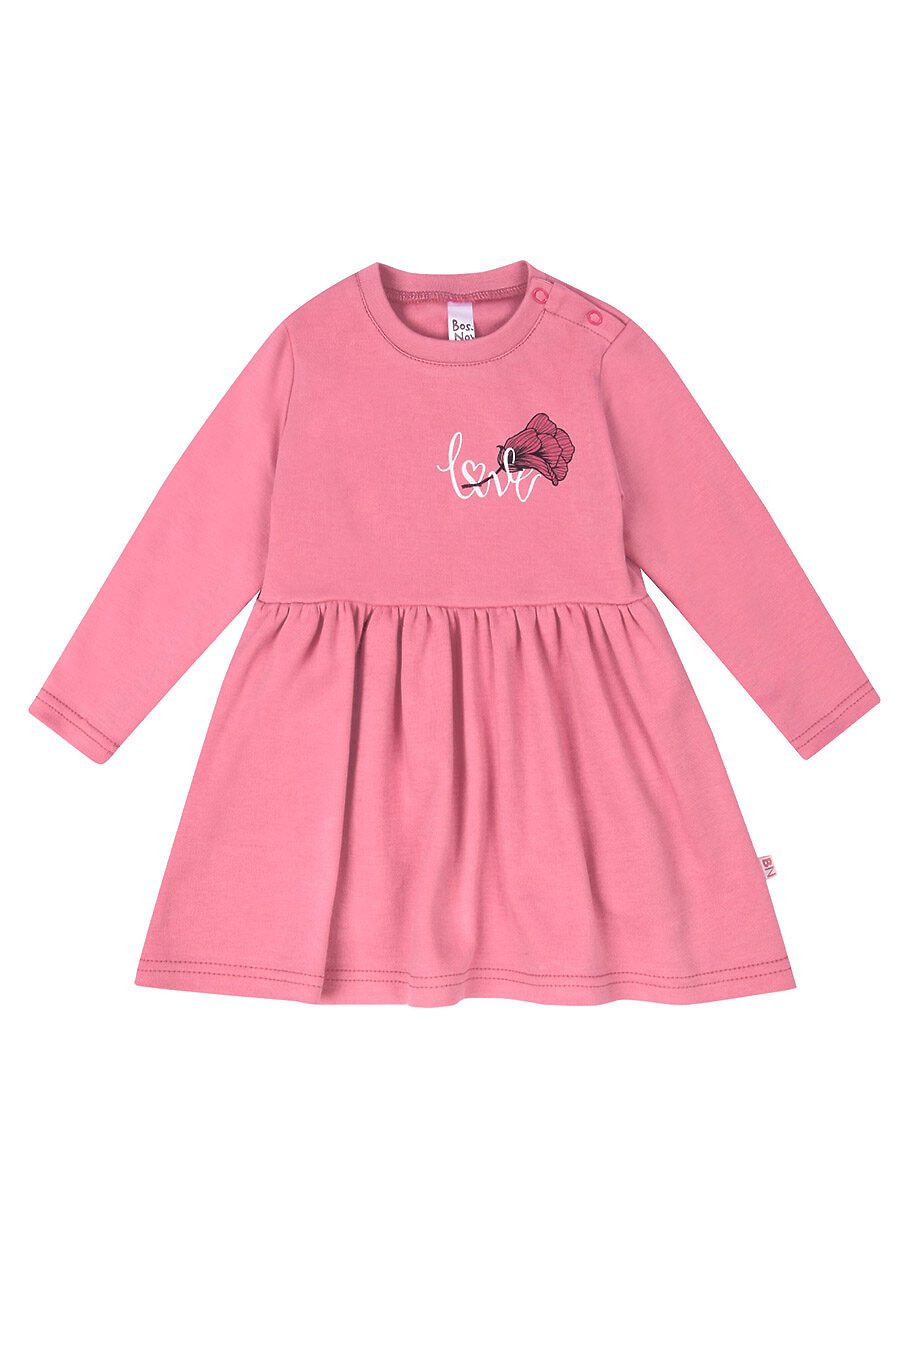 Платье для девочек BOSSA NOVA 708779 купить оптом от производителя. Совместная покупка детской одежды в OptMoyo